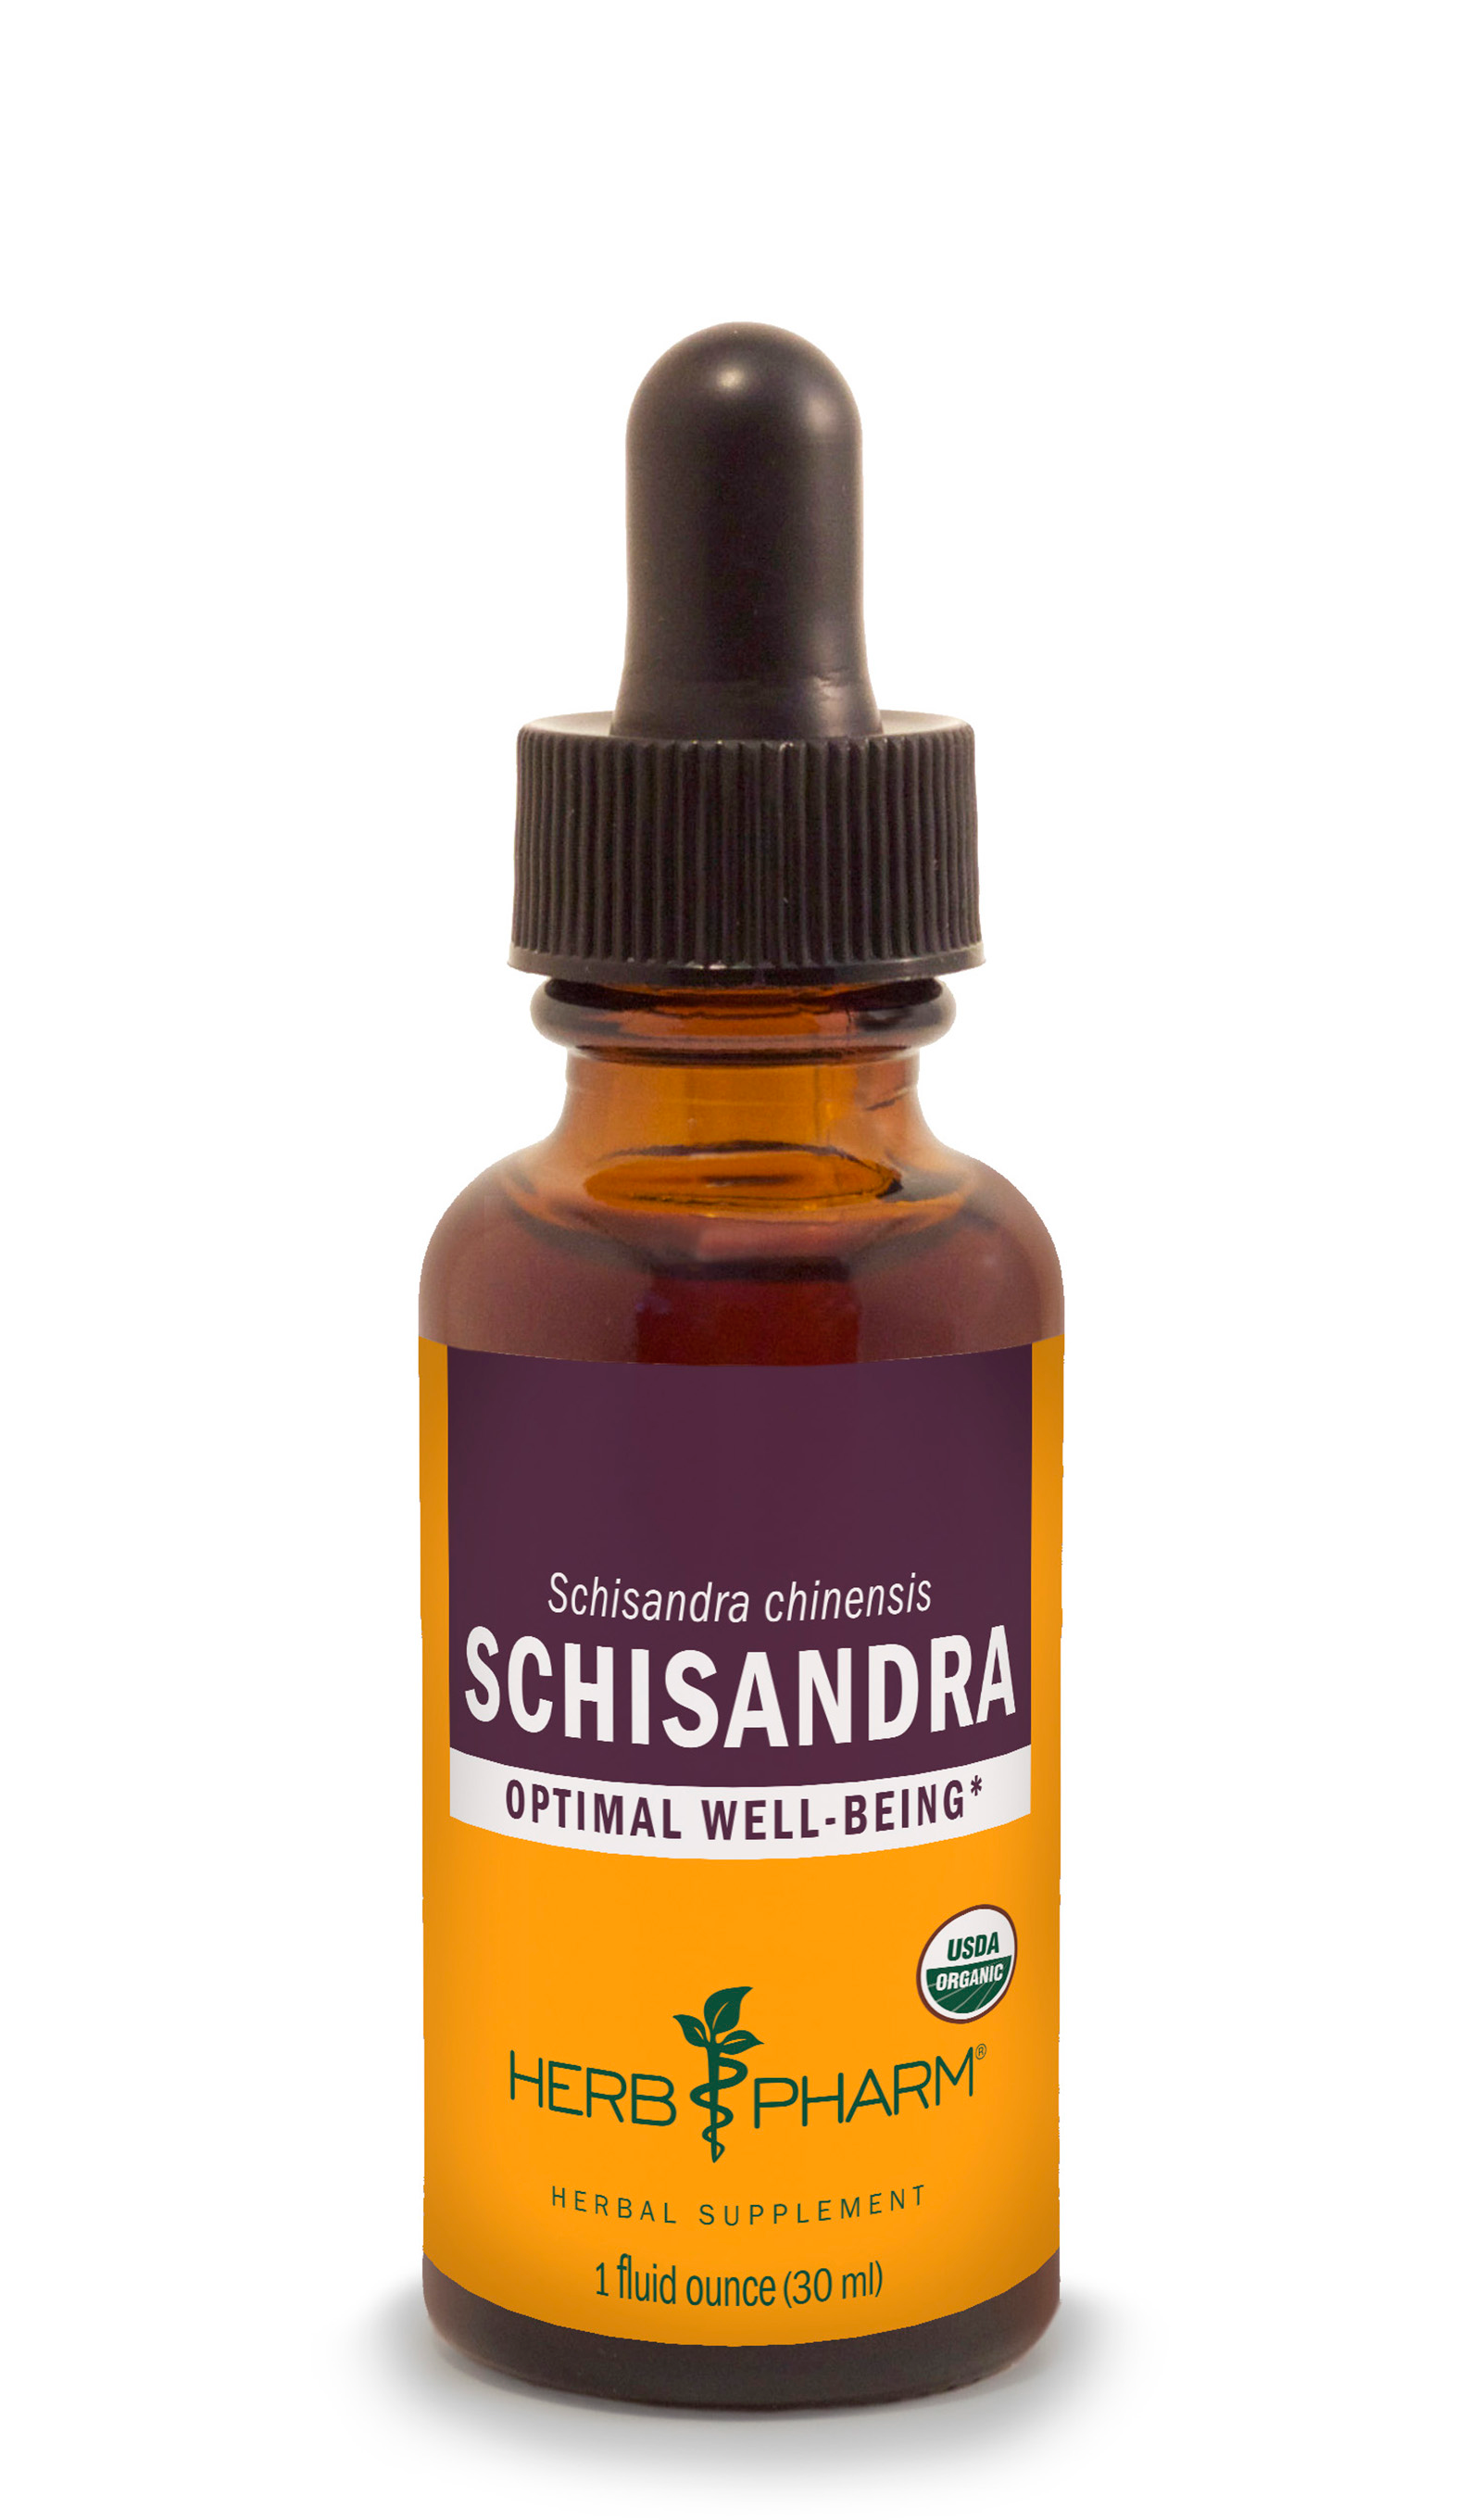 Herbal-supplements-of-Schisandra